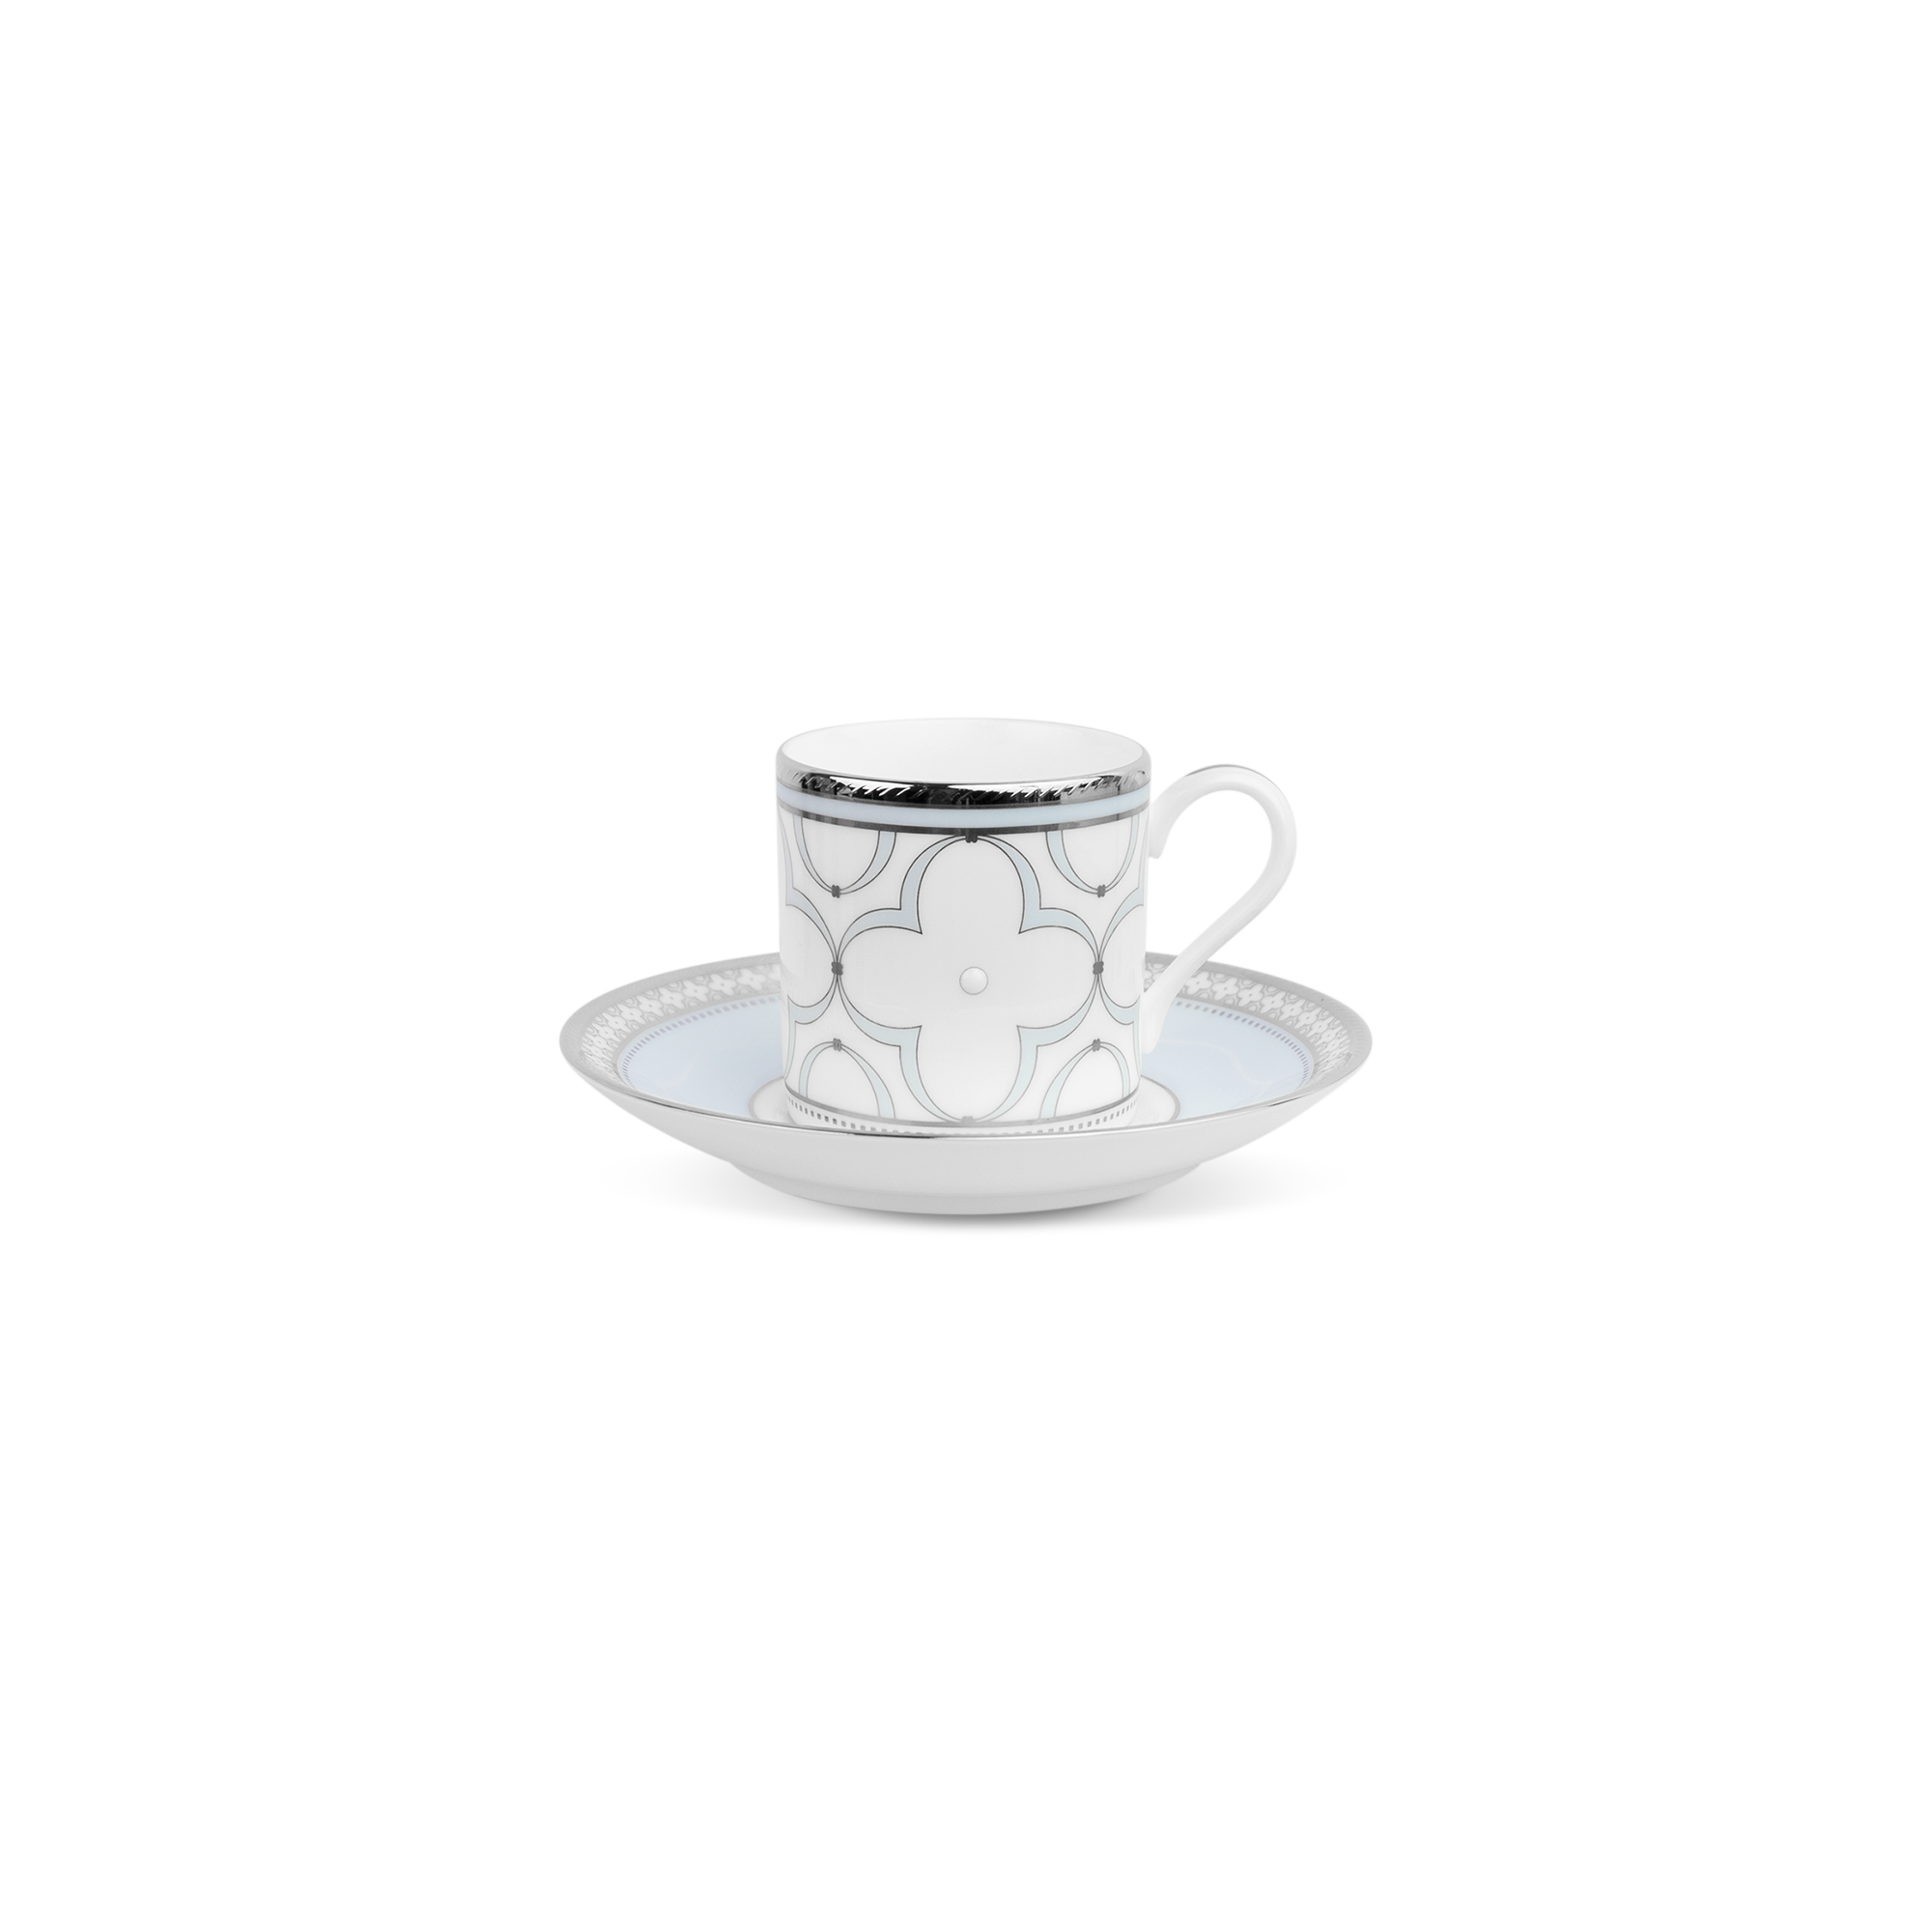  Chén trà (tách trà) nhỏ 90ml kèm đĩa lót | Trefolio Platinum 4957L-T97294 